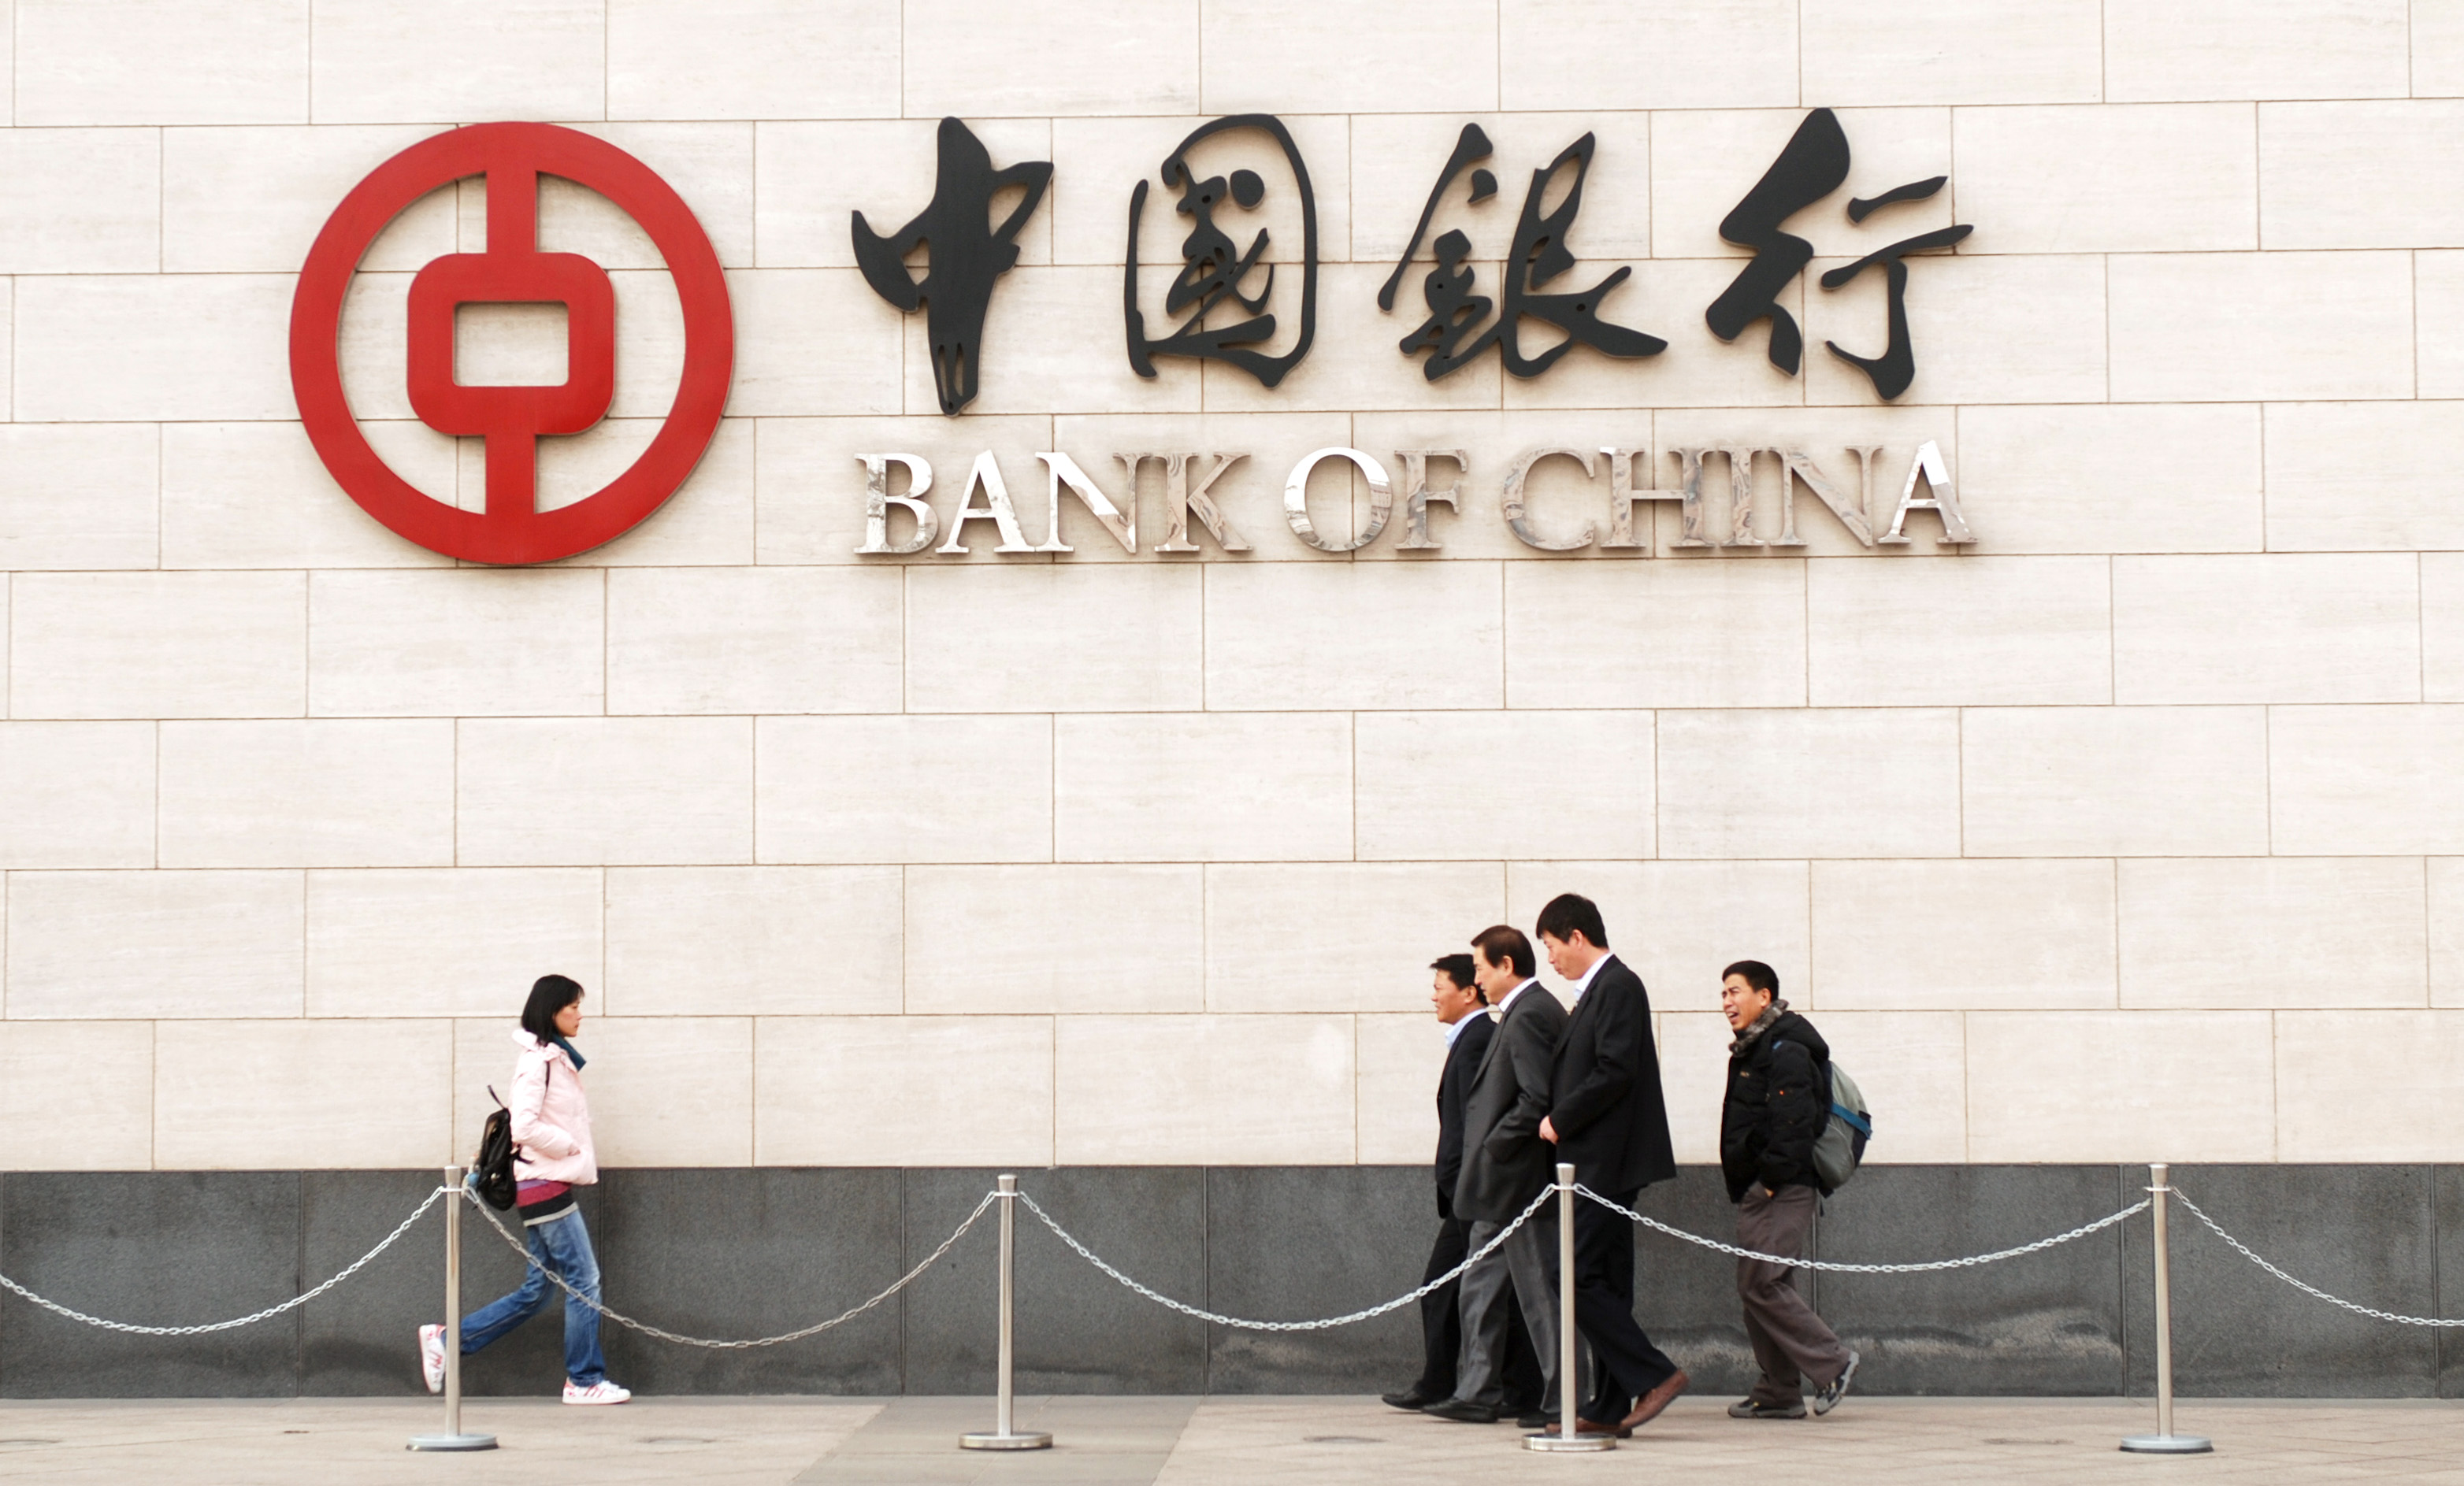 Bank of china китай. Китайский банк. Логотипы банков Китая. Банк Китая (Bank of China). Chinatown банк Китая.